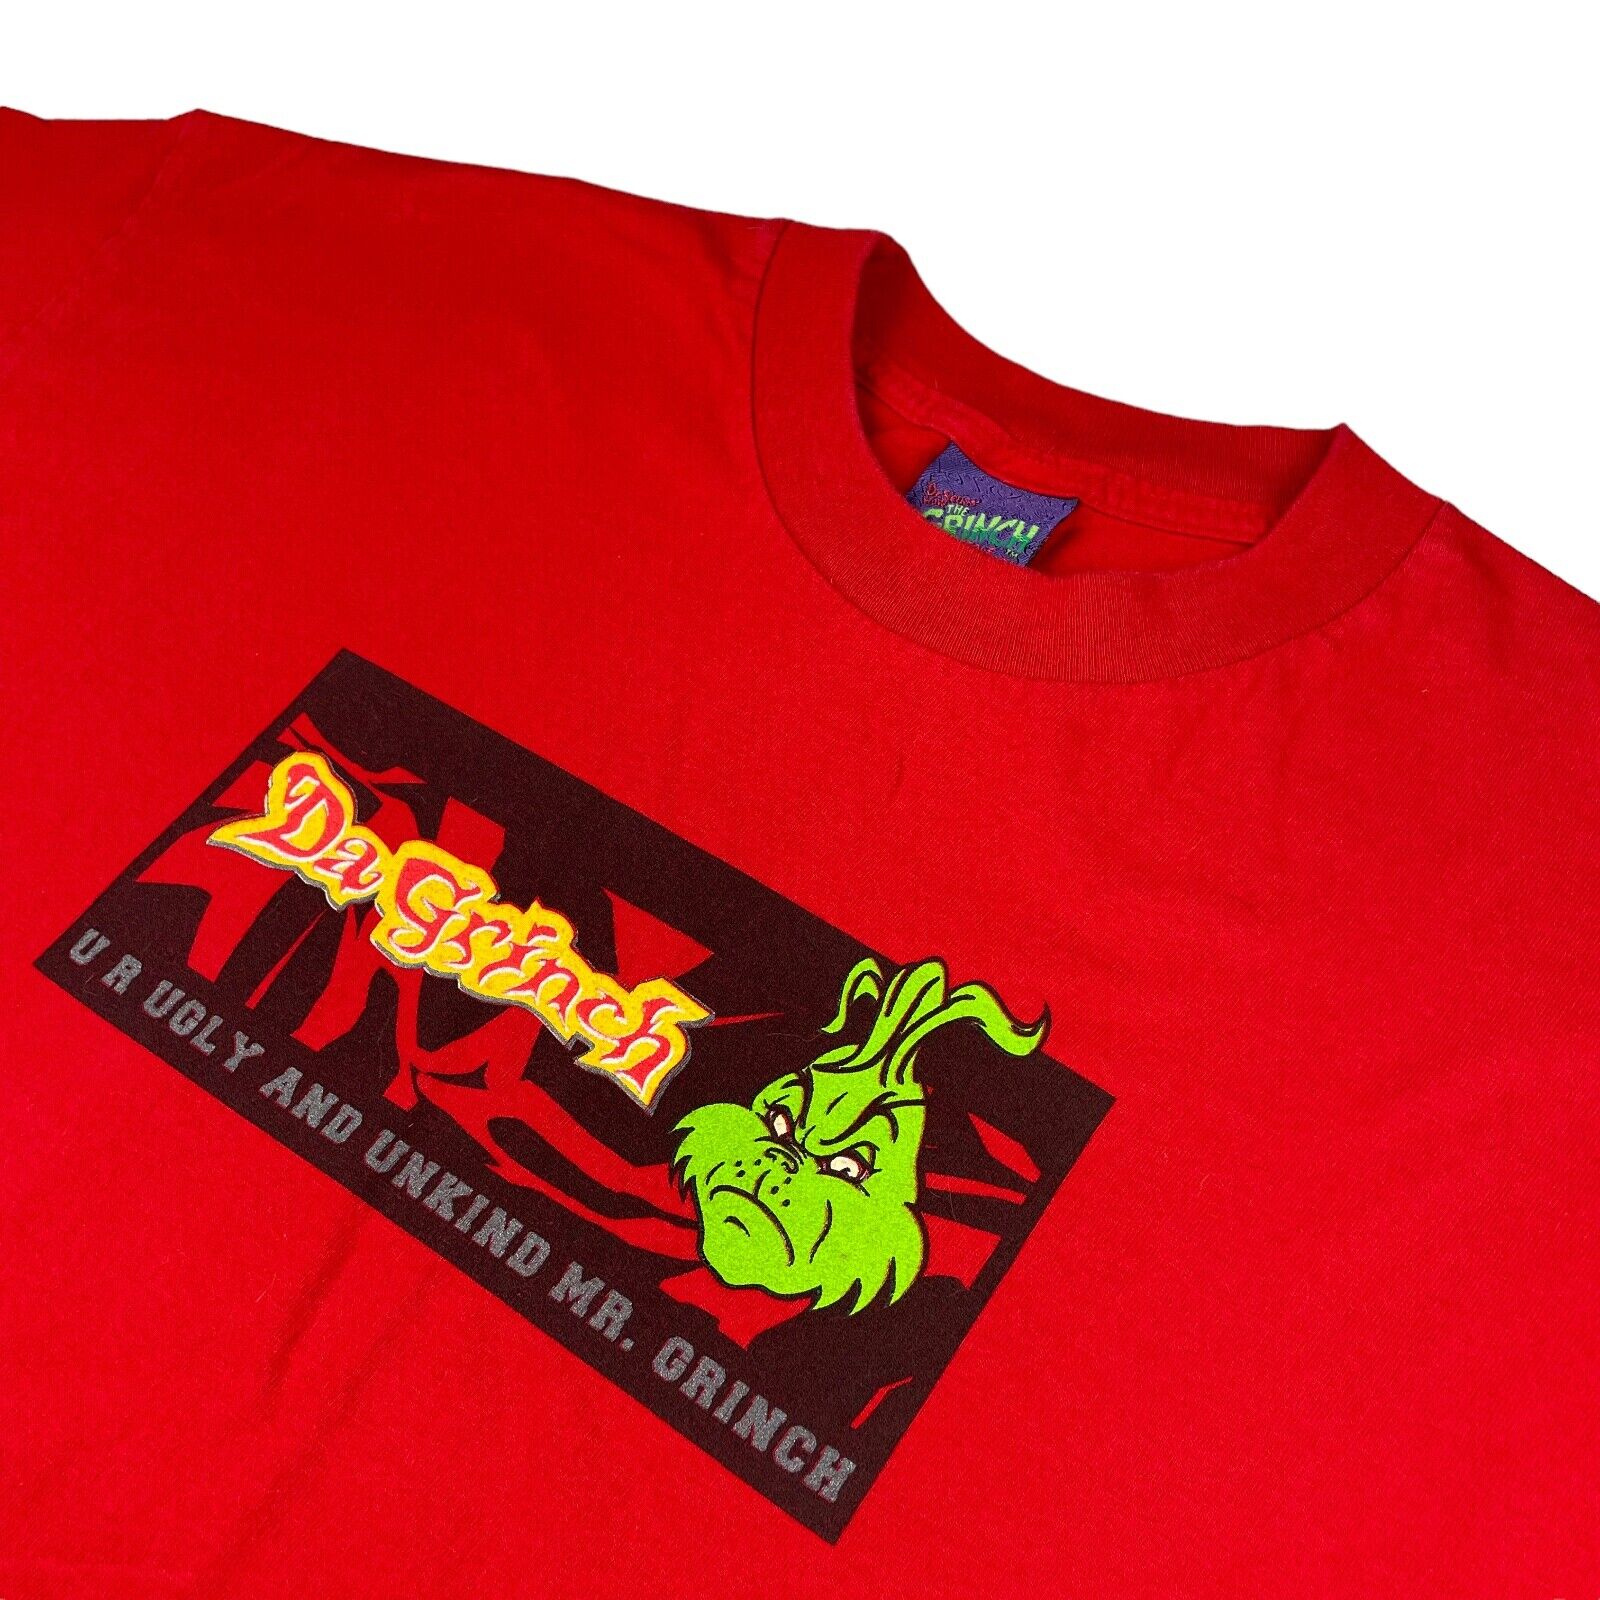 VTG 2000 DaGrinch Men's 100% Cotton Crewneck S/S T-Shirt Red  XL